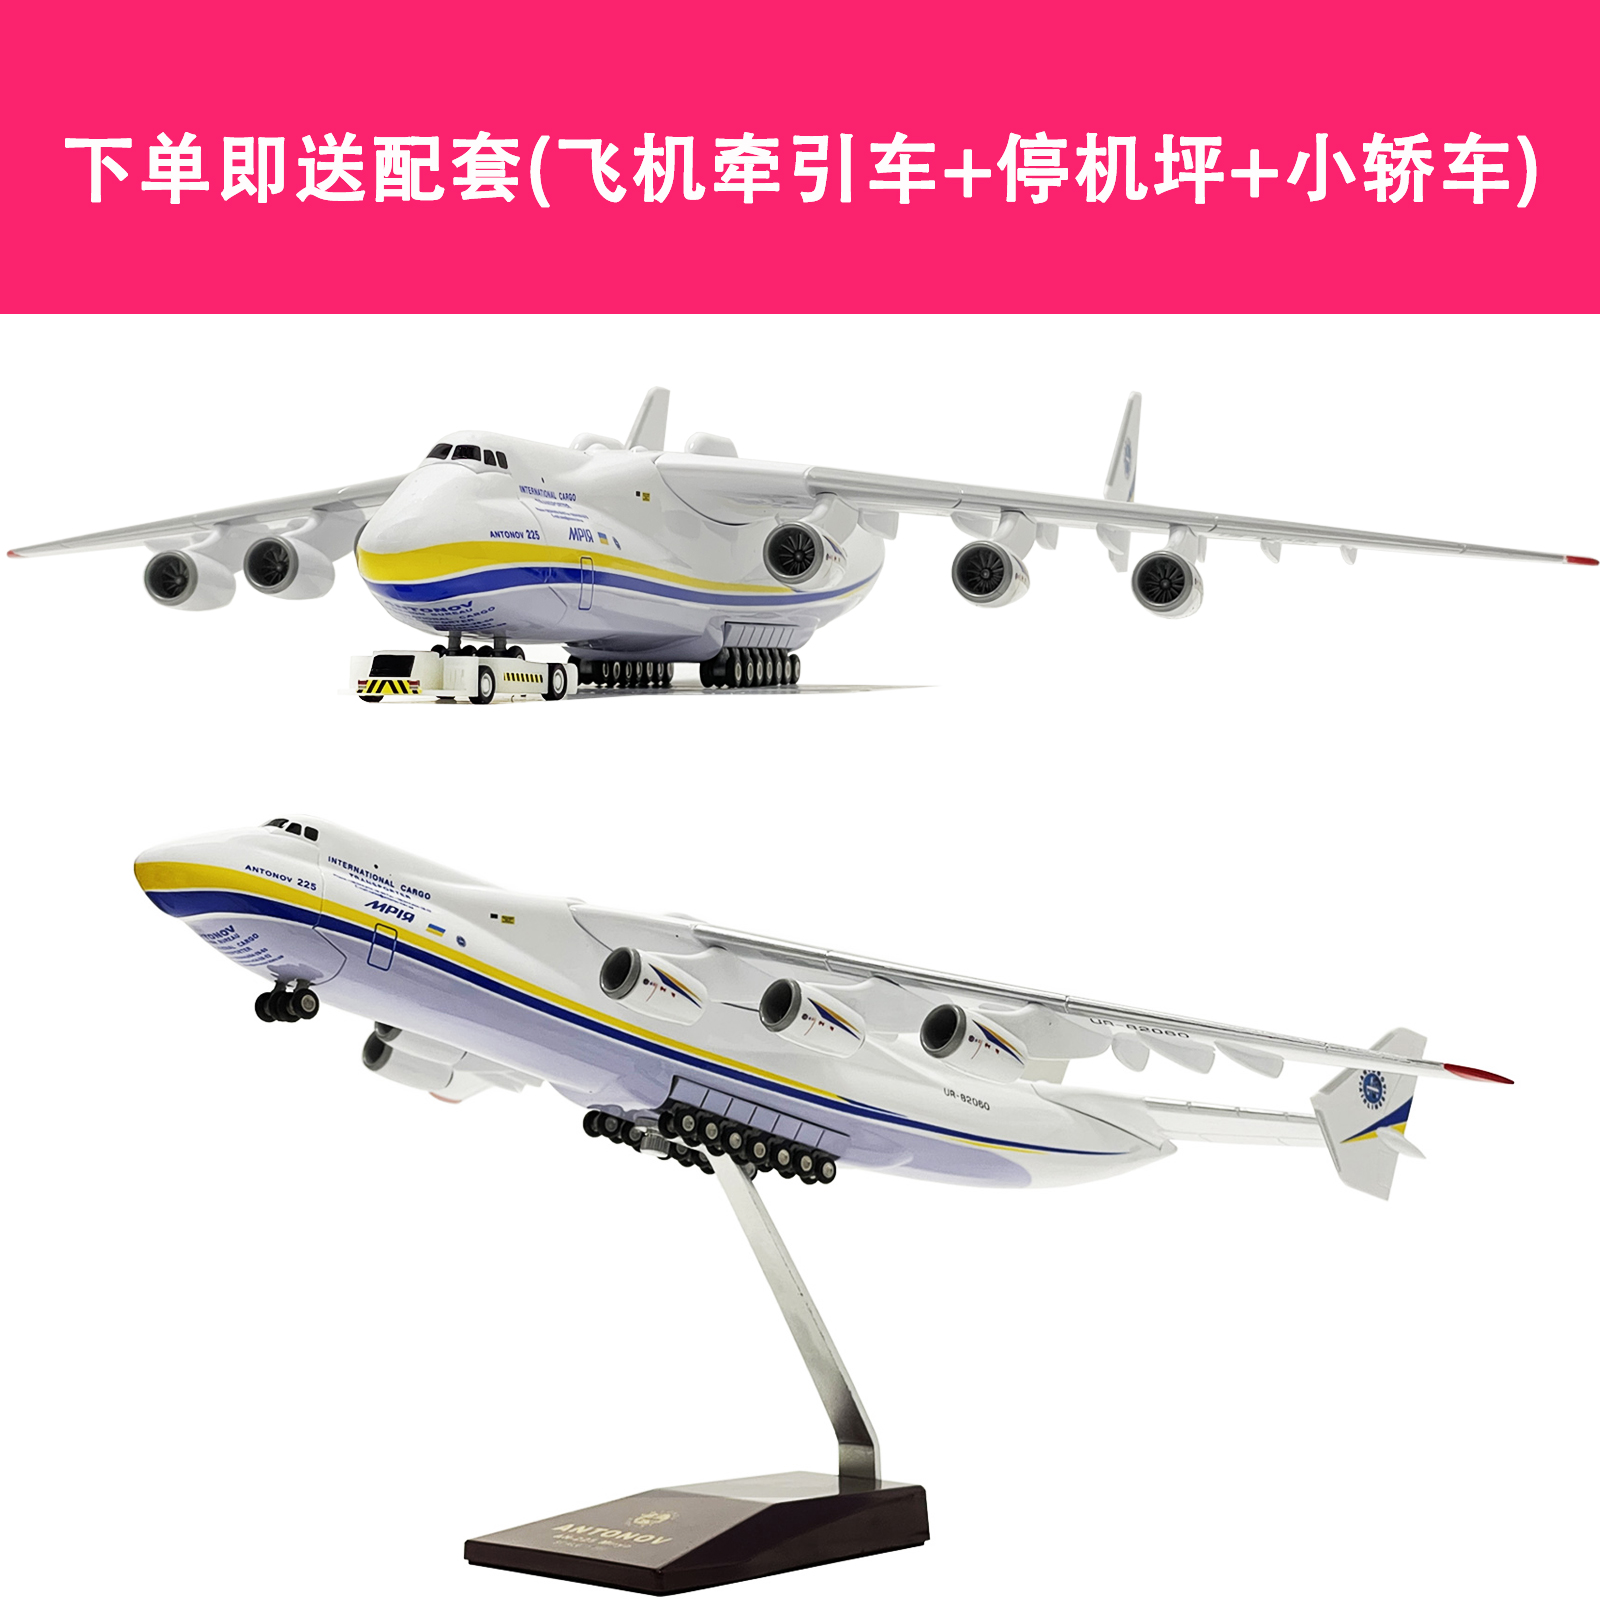 an225模型安225运输机1:200大模型44厘米仿真飞机摆件儿童礼品